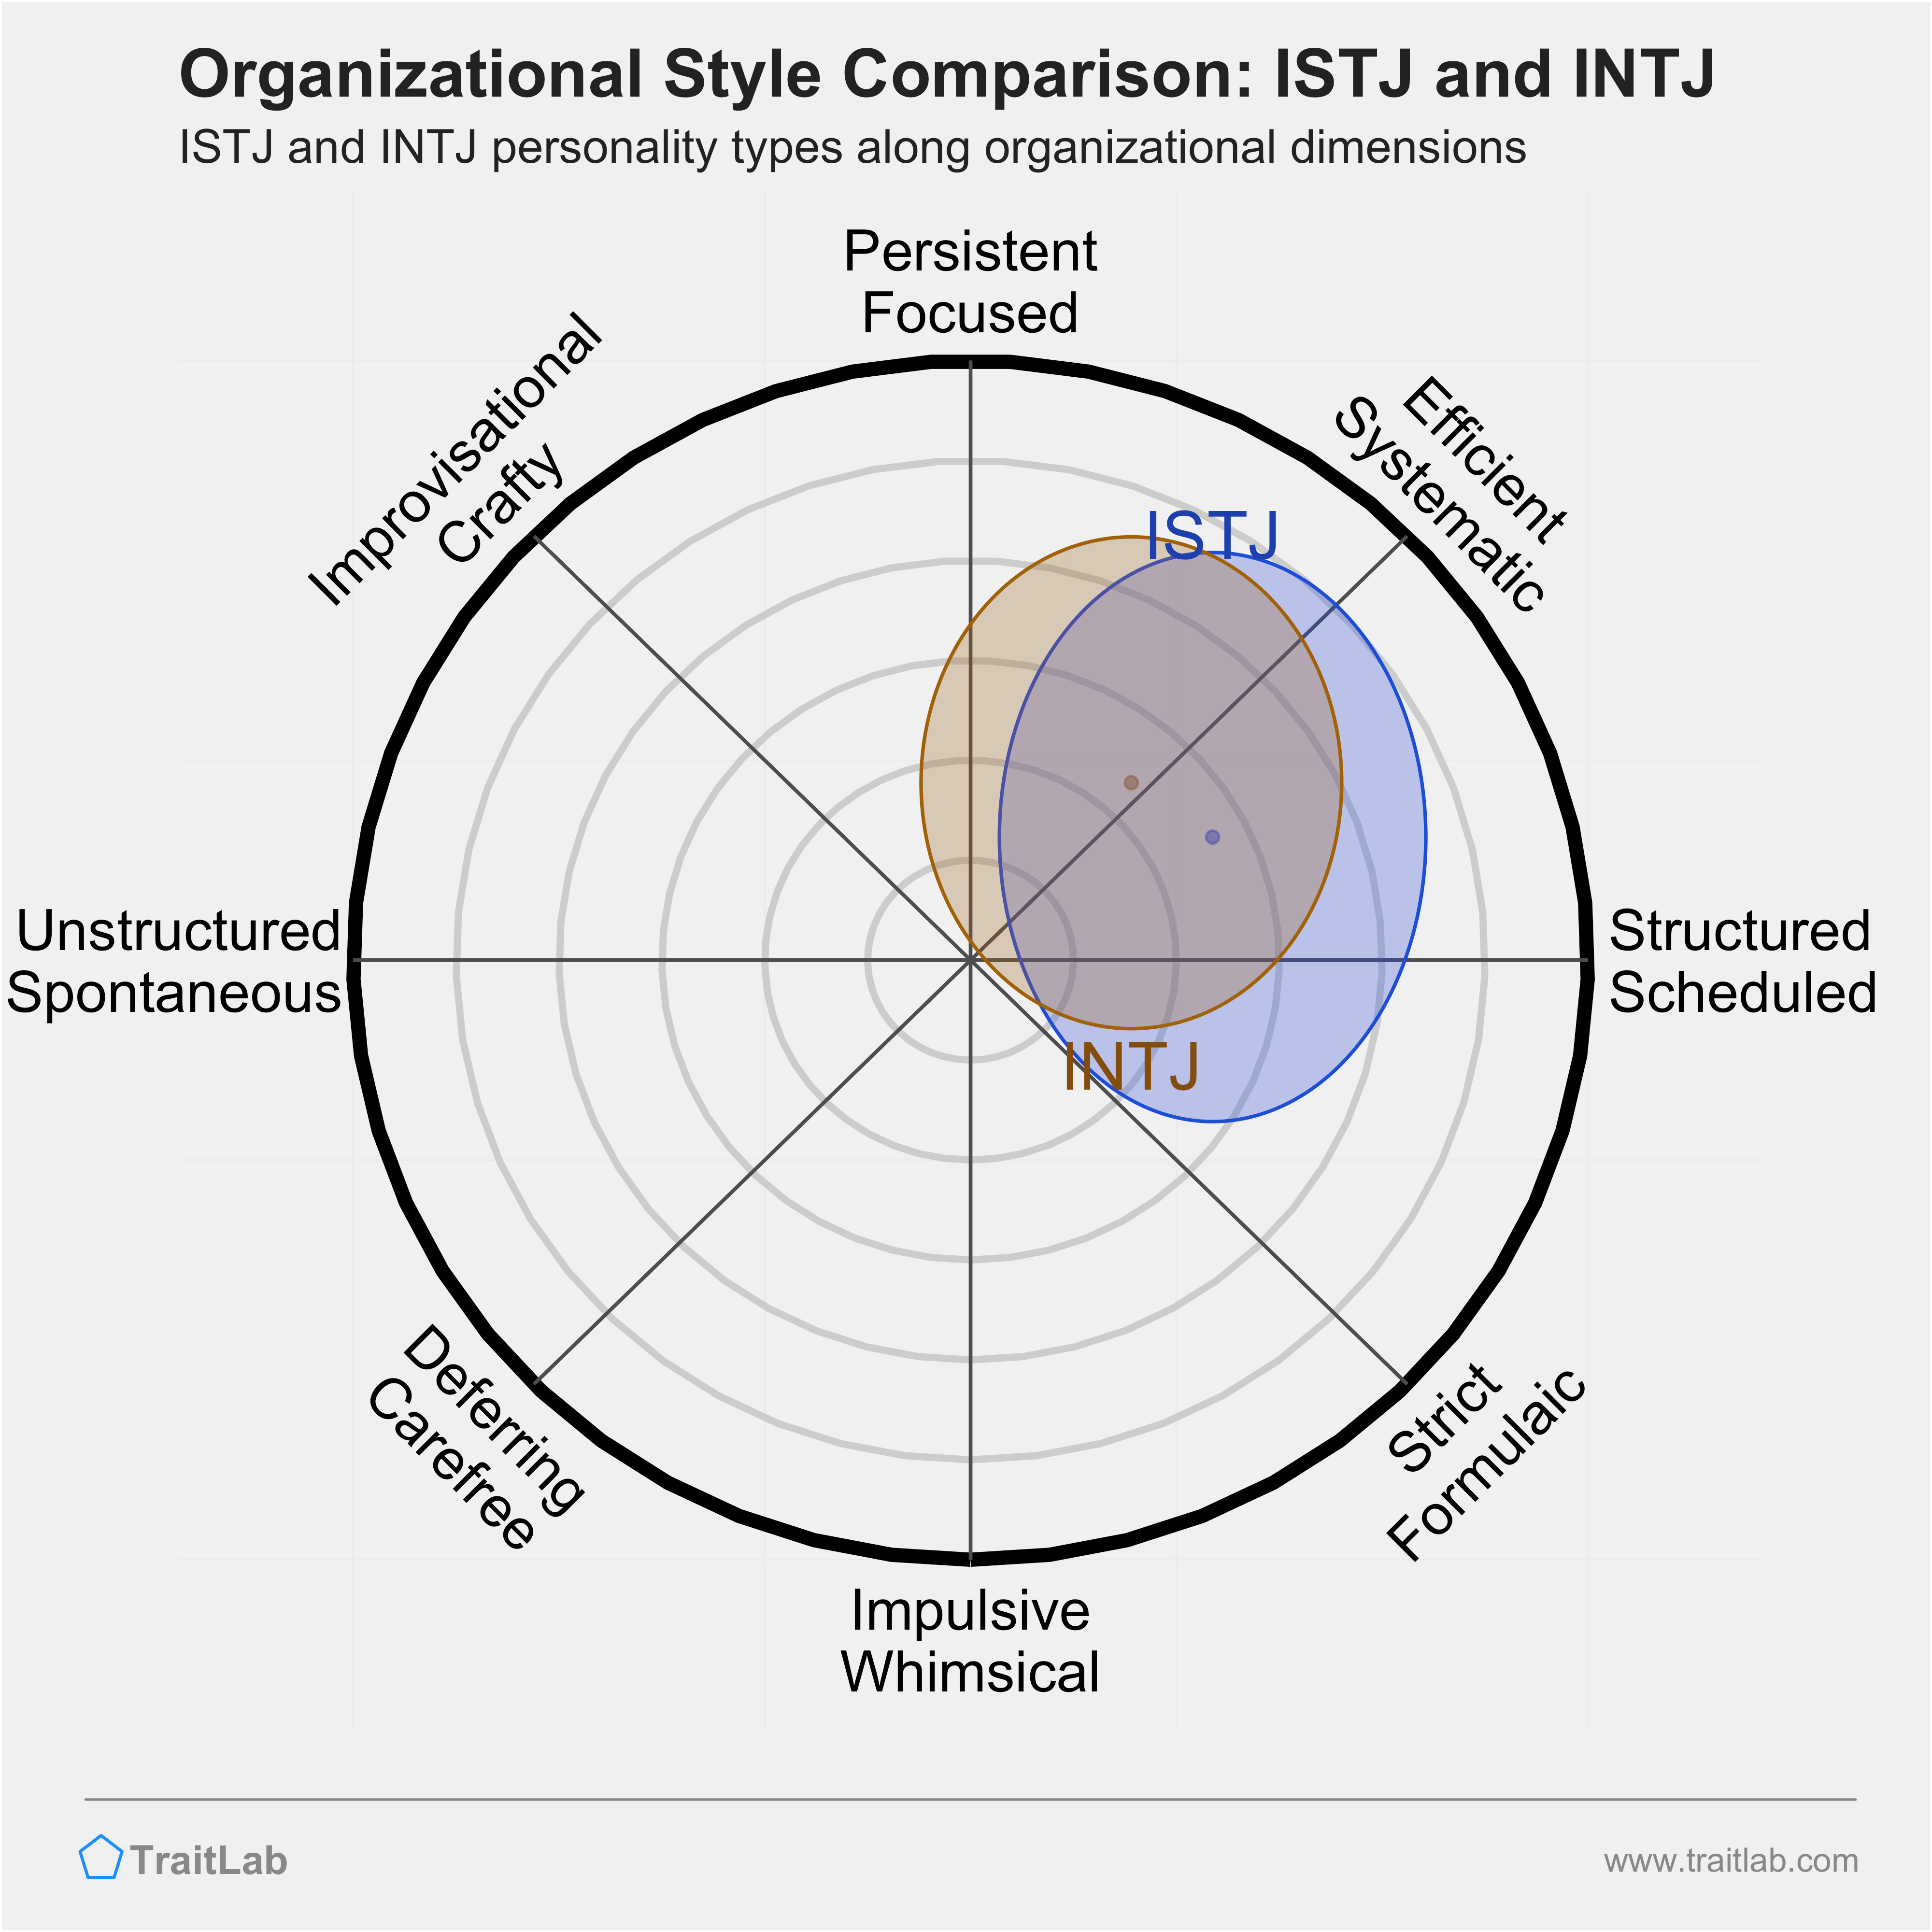 INTJ Compatibility Chart